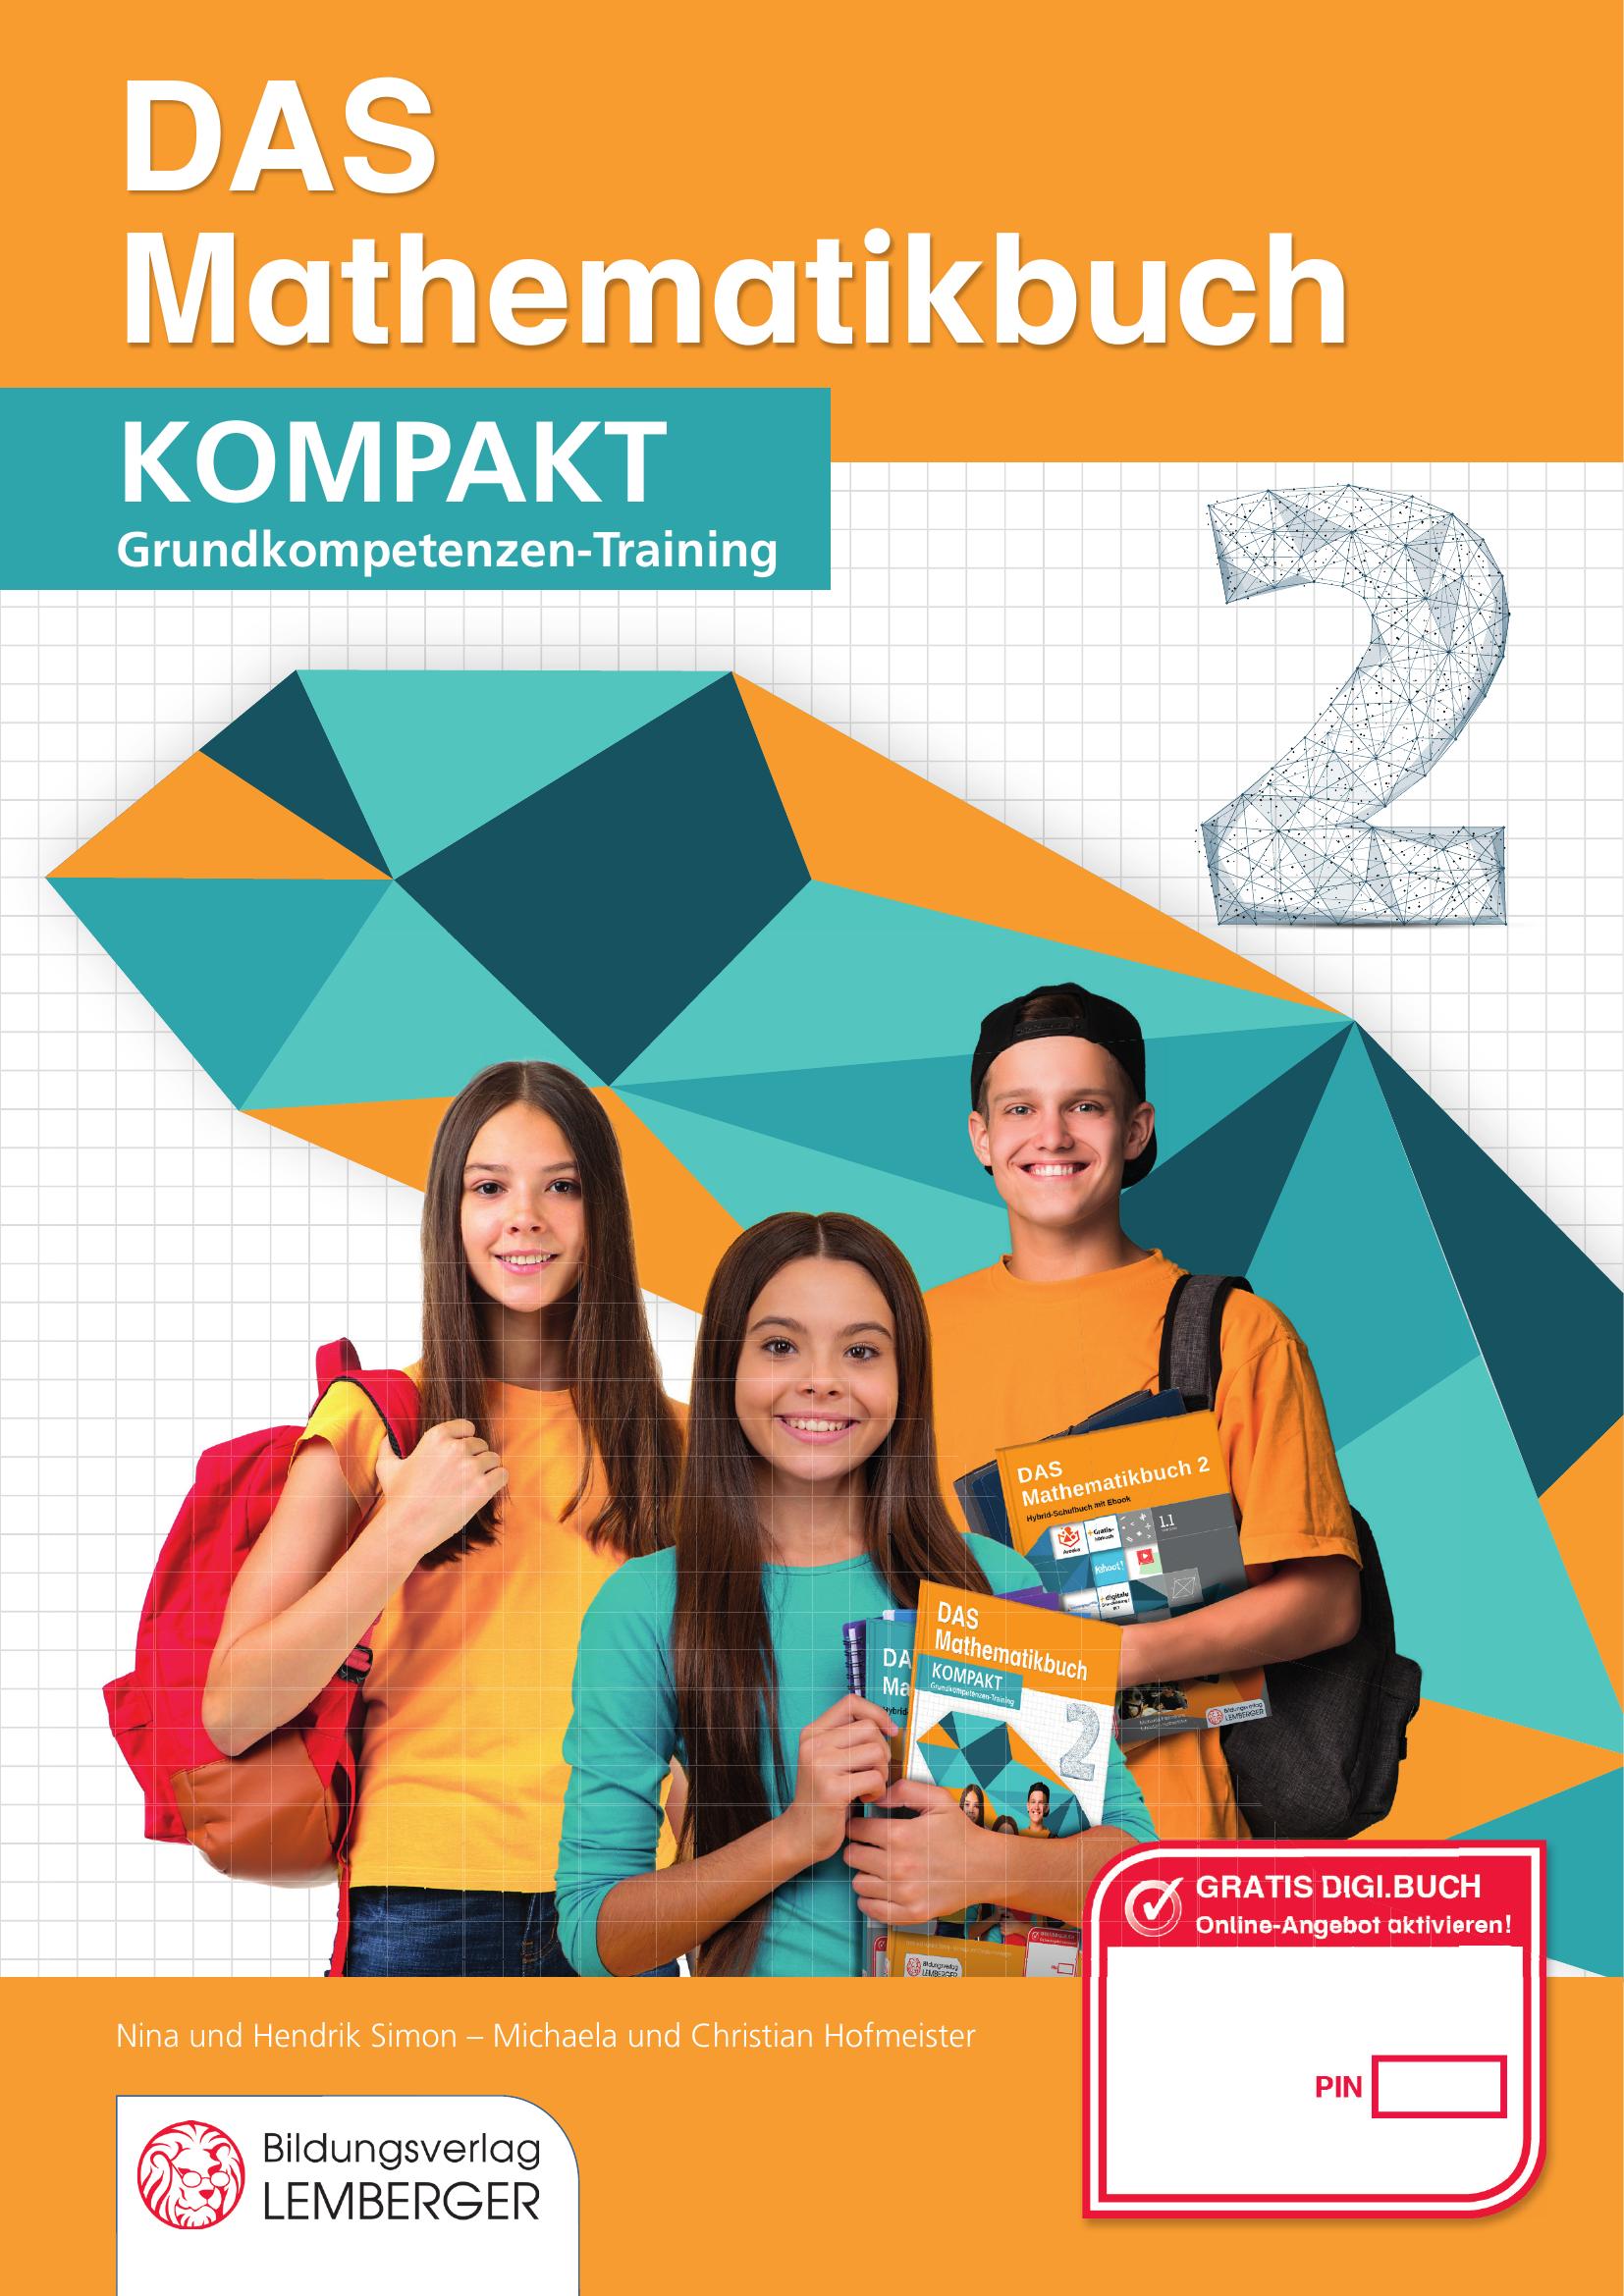 DAS Mathematikbuch 2 - KOMPAKT: Grundkompetenzen-Training